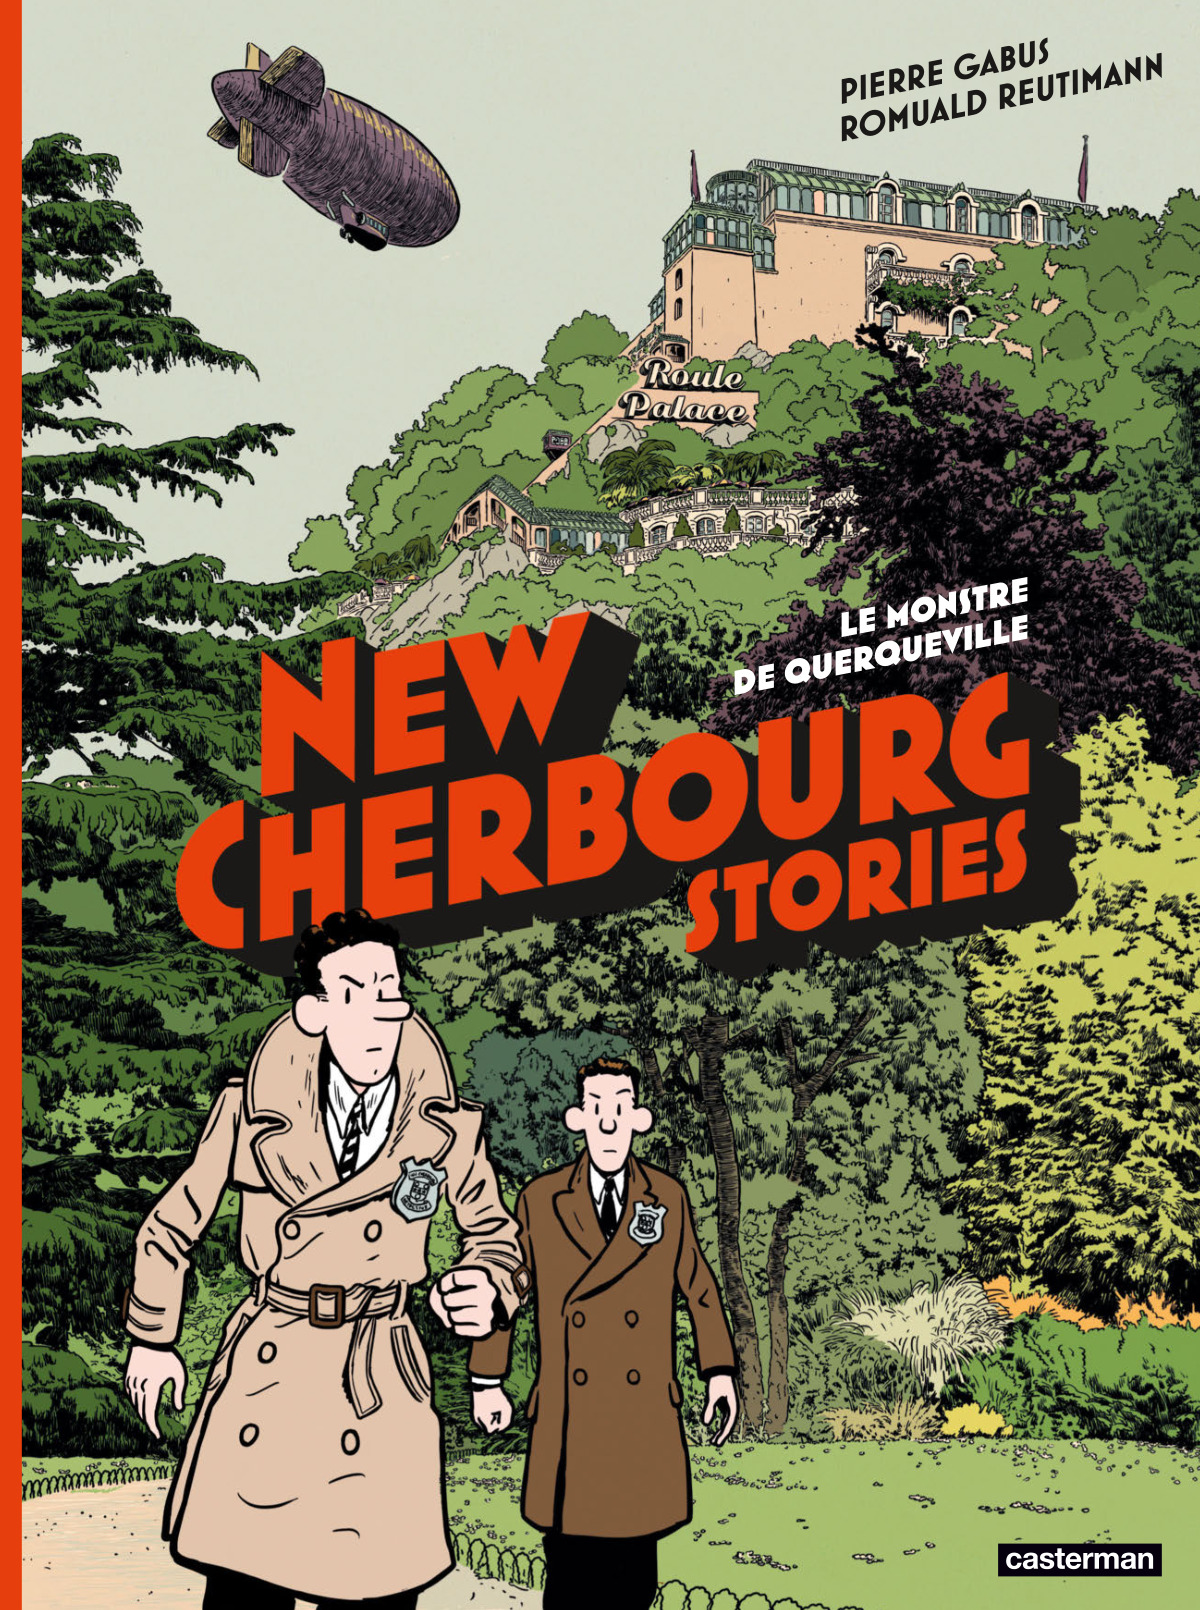 New Cherbourg Stories Tome 1 - Le Monstre de Querqueville (cover)